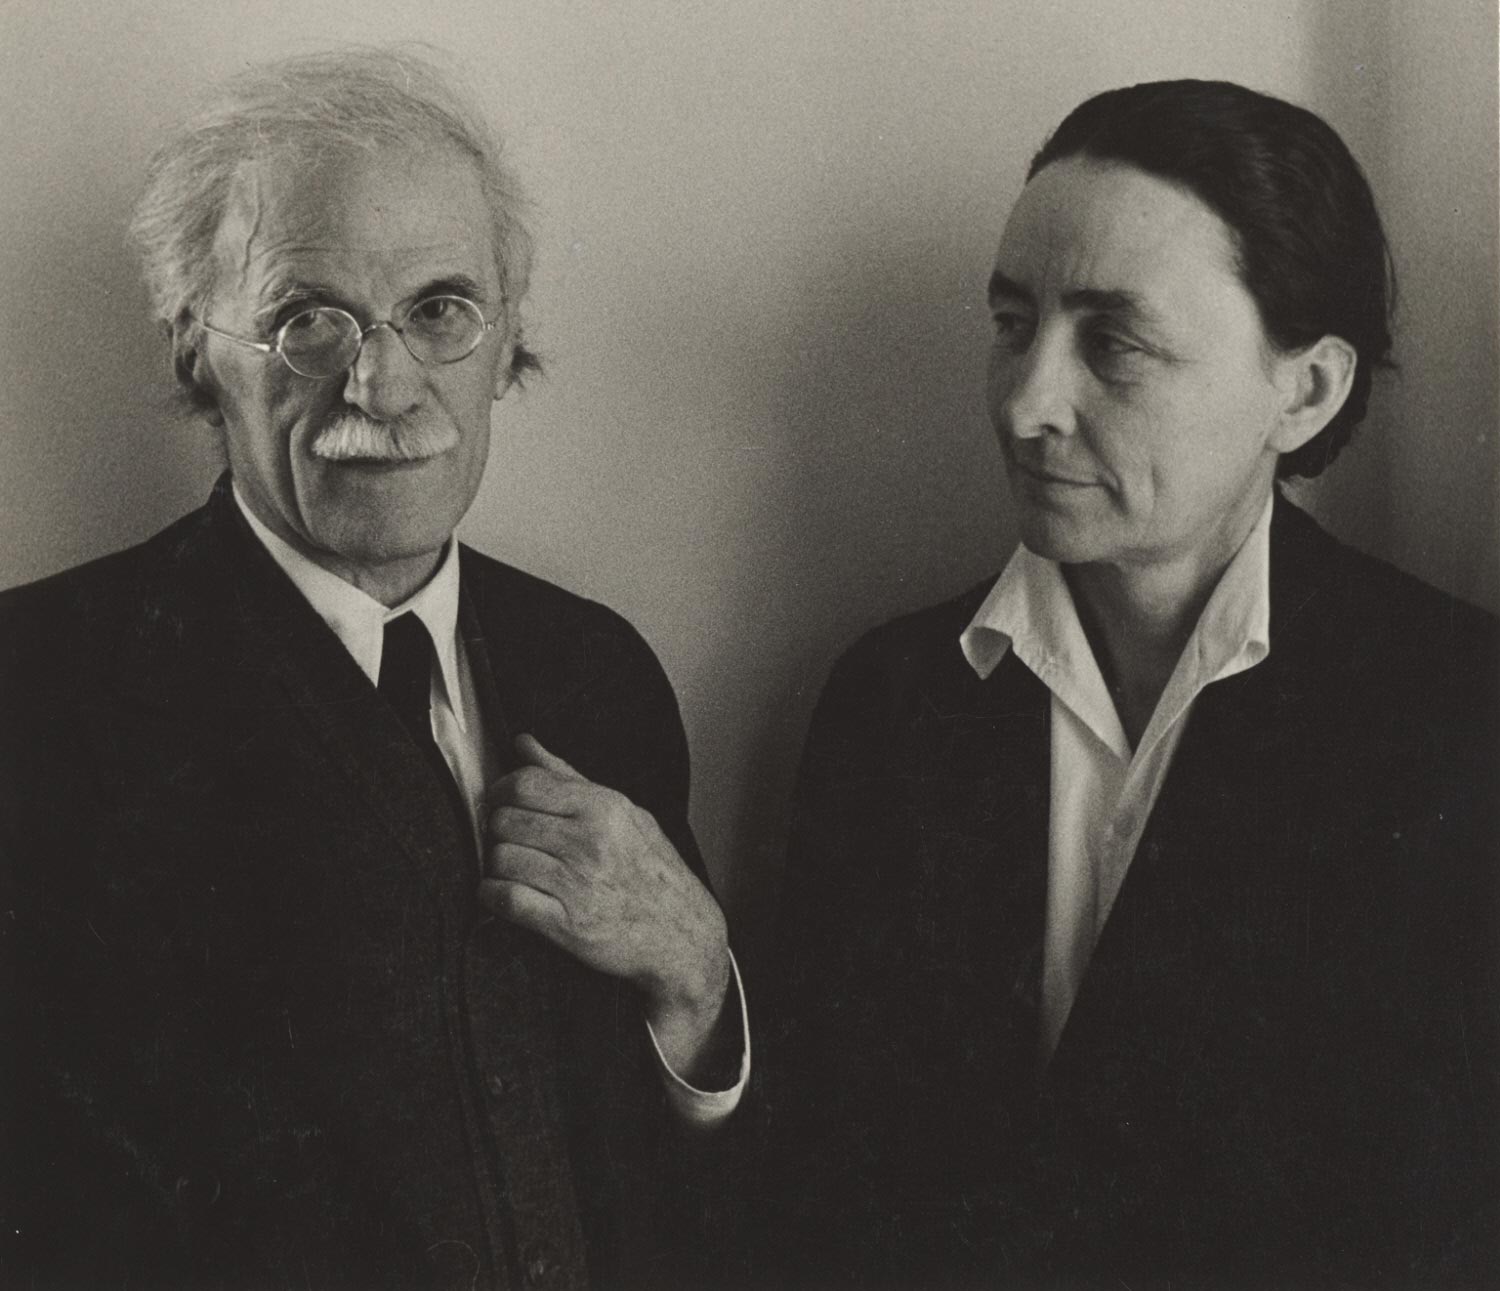 Alfred Stieglitz and Georgia O'Keeffe. c. 1939. Ansel Adams